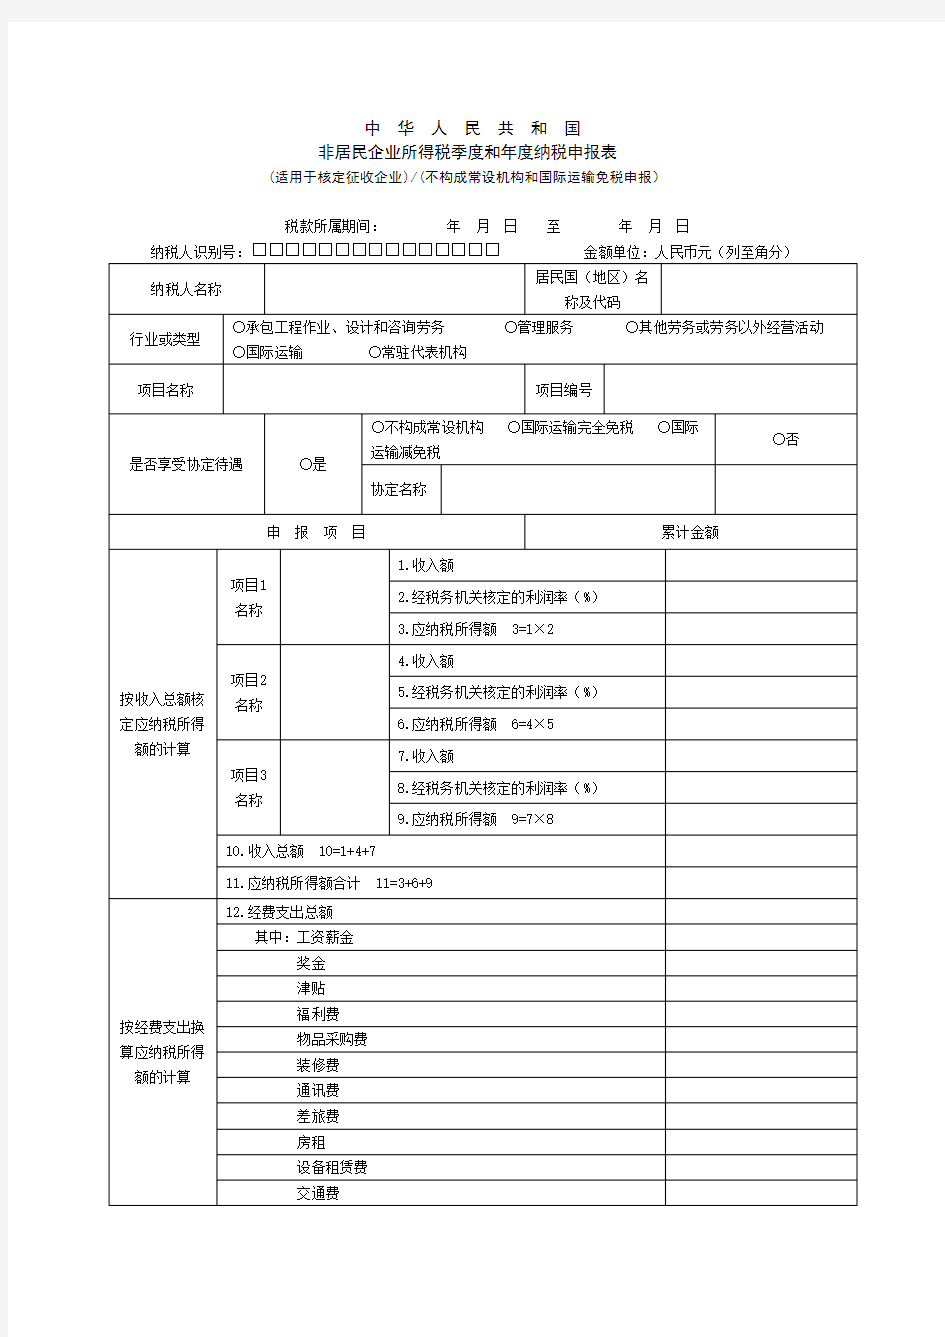 非居民企业所得税季度和年度纳税申报表.doc-中华人民共和国